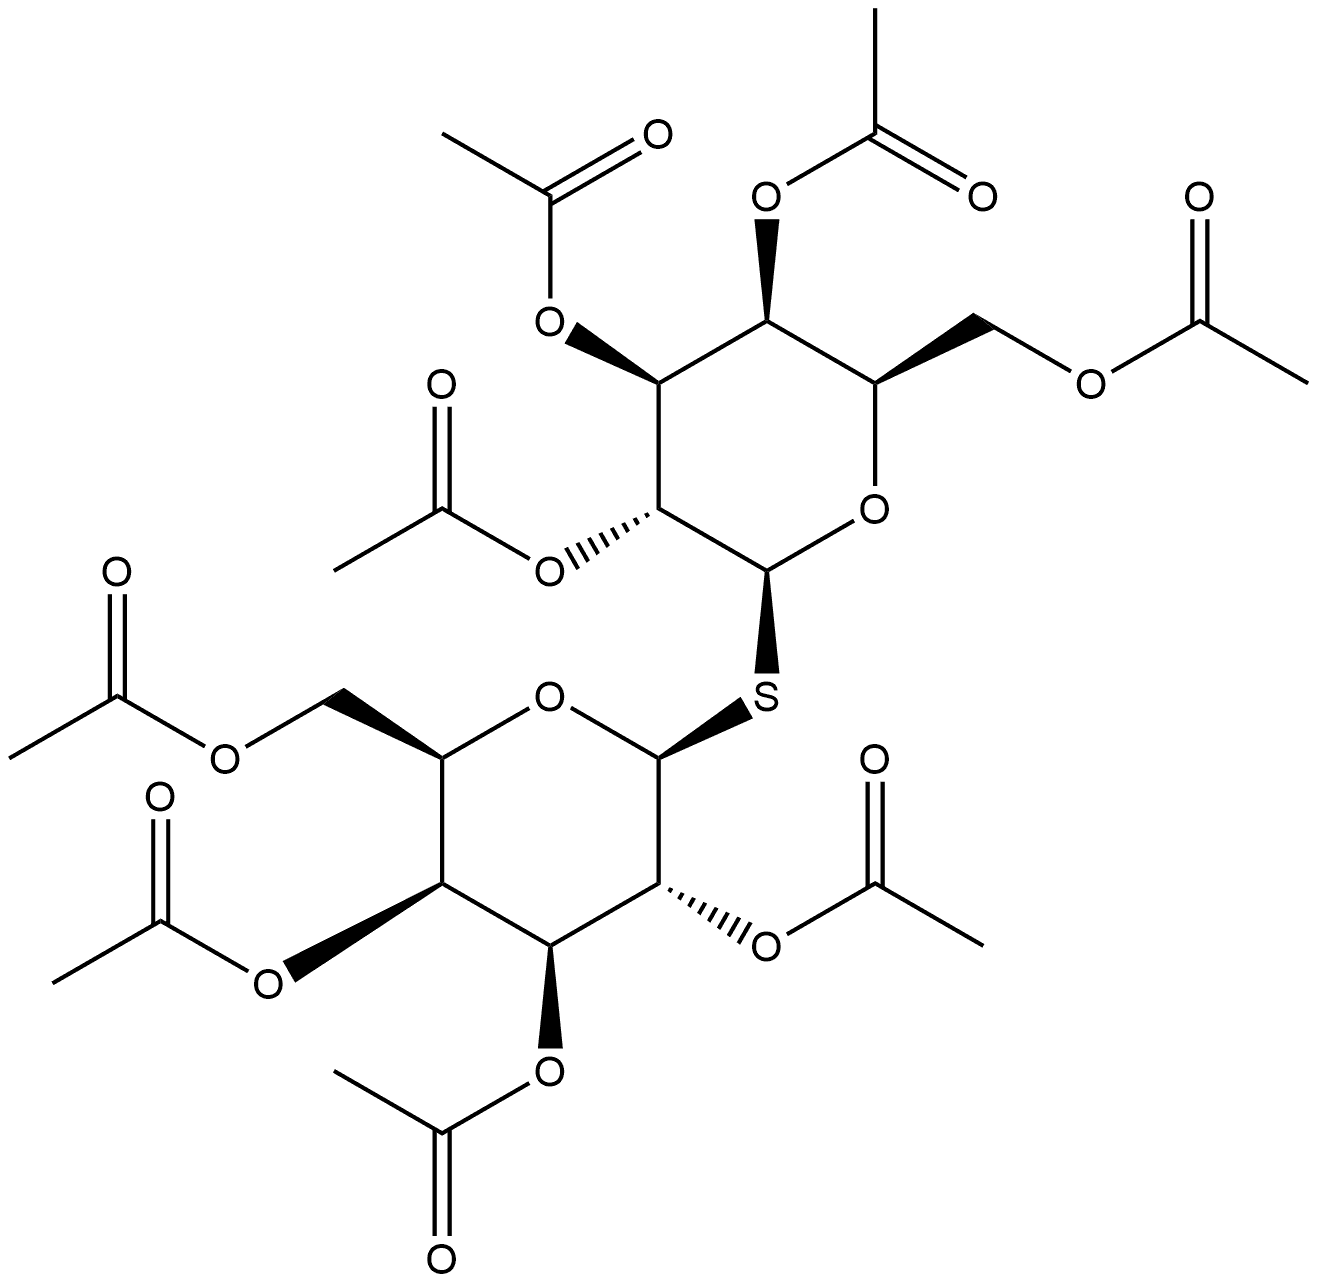 β-D-Galactopyranoside, 2,3,4,6-tetra-O-acetyl-β-D-galactopyranosyl 1-thio-, 2,3,4,6-tetraacetate Structure